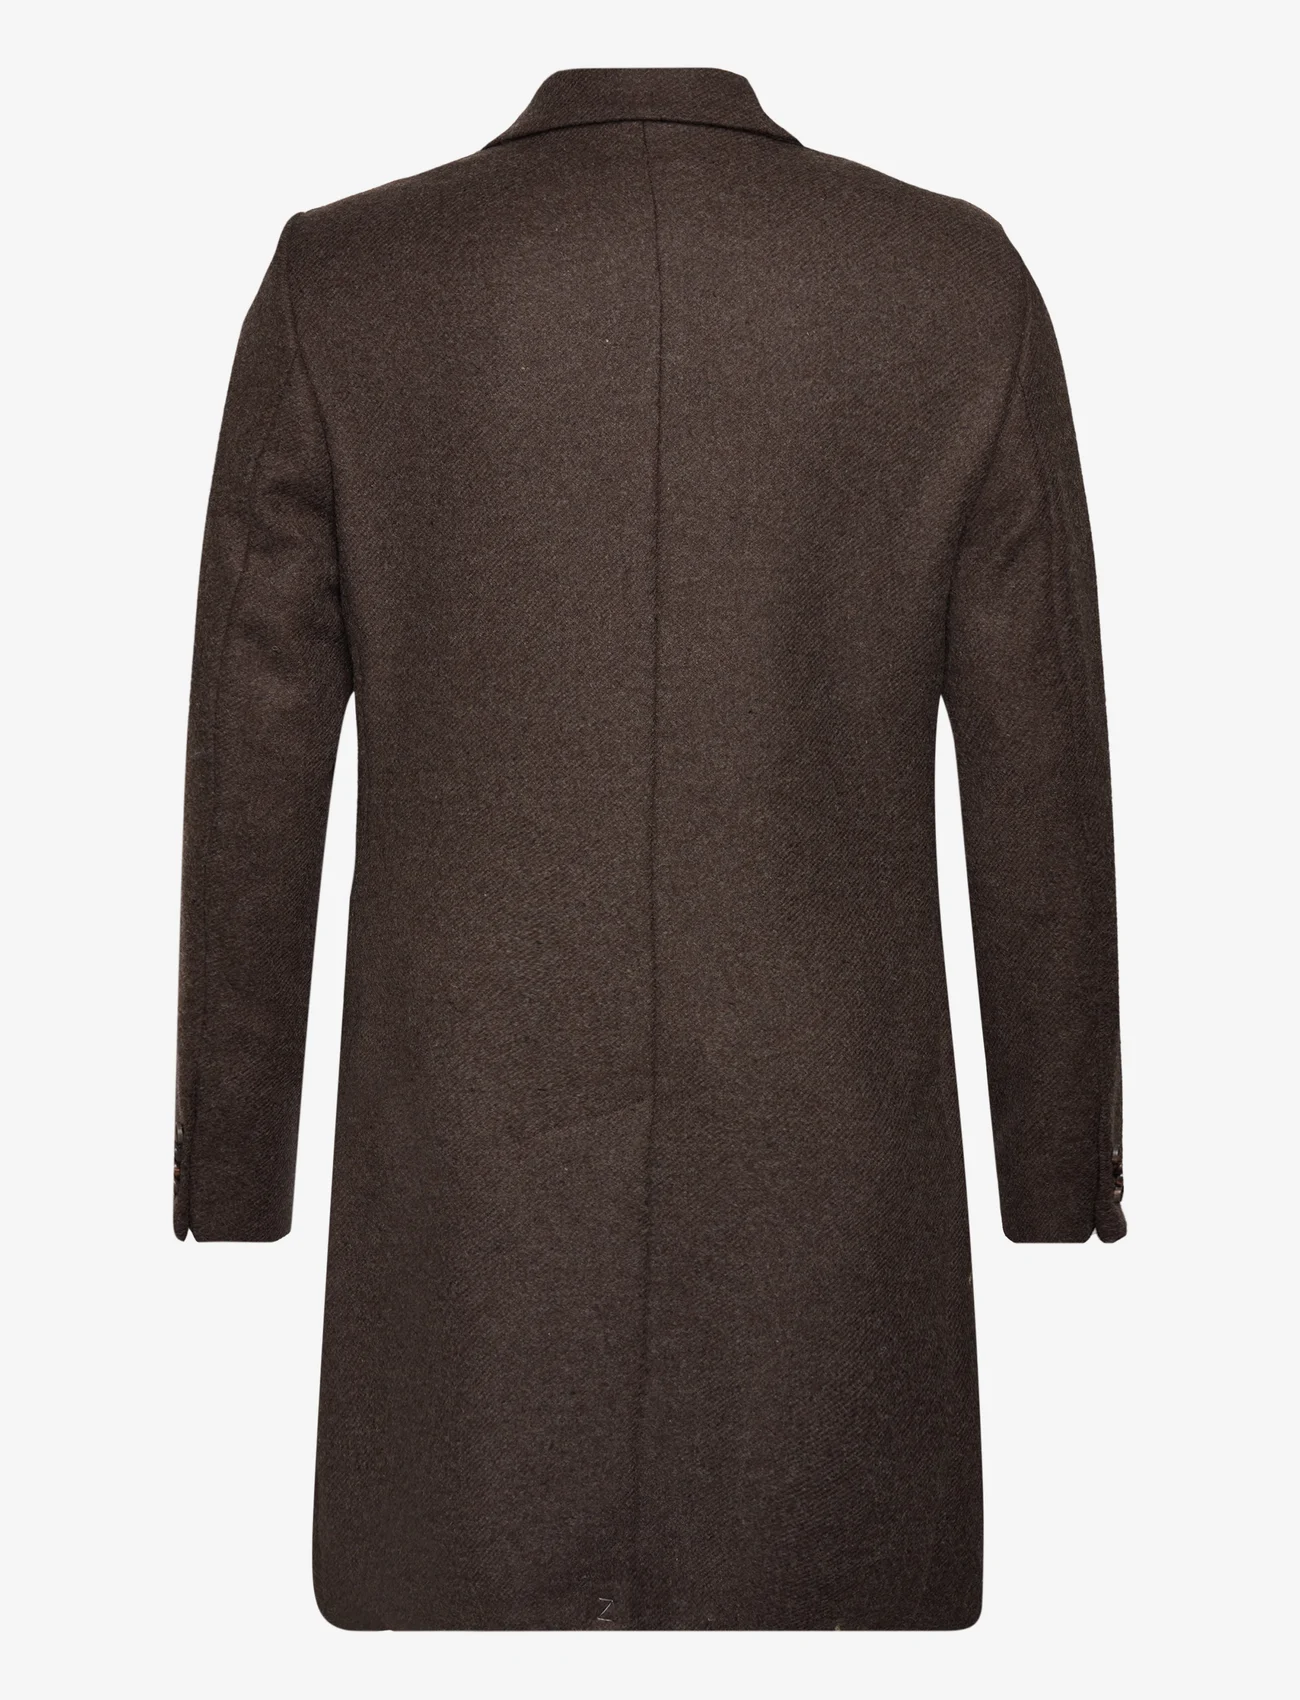 Morris - Morris Wool SB Coat - winter jackets - brown - 1